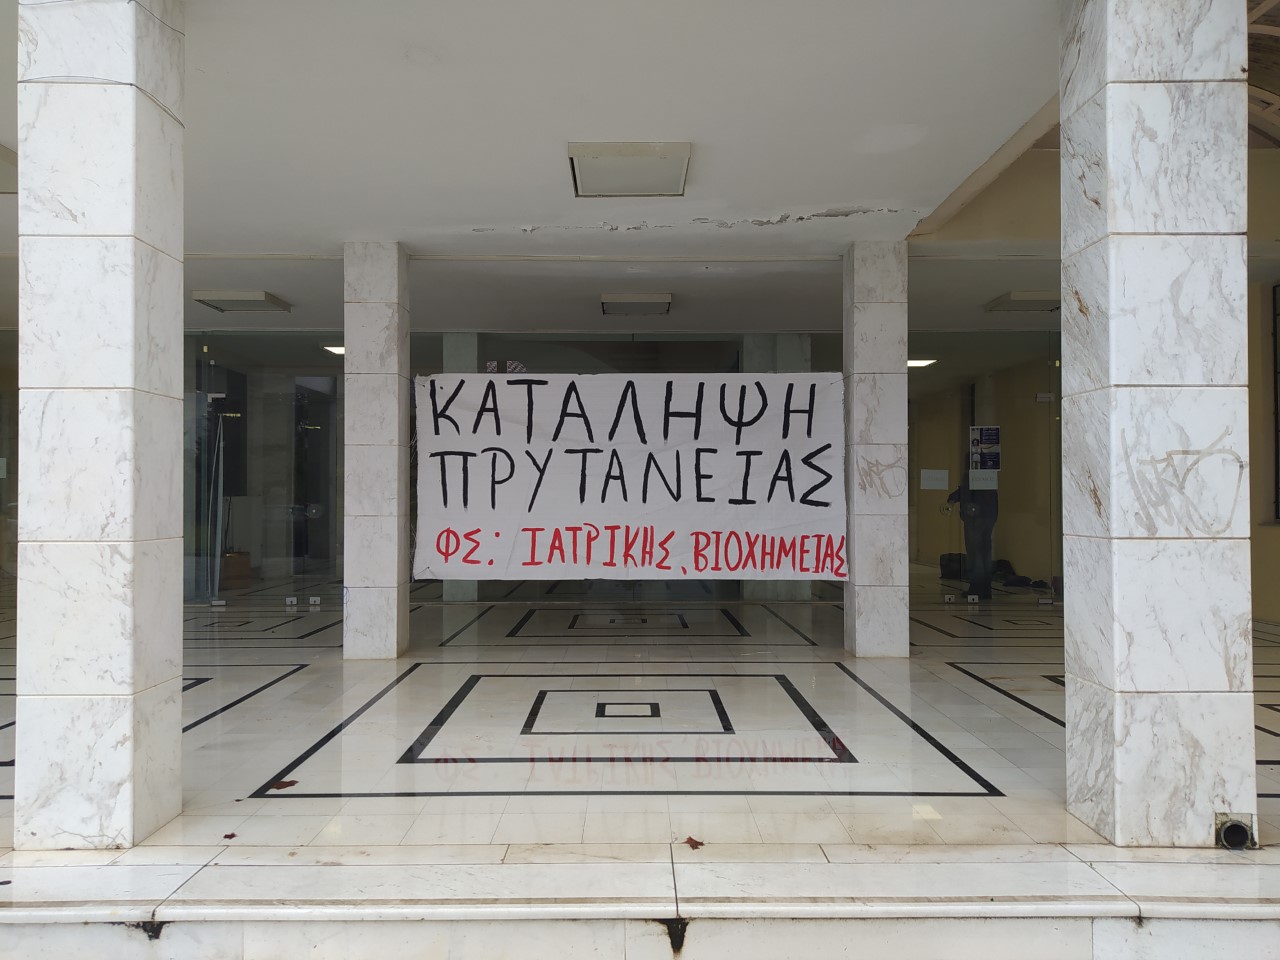 Σε κατάληψη η Πρυτανεία του Πανεπιστημίου Θεσσαλίας στην Λάρισα – Ληγμένα επιδόρπια και προβλήματα στην σίτιση καταγγέλλουν οι φοιτητές